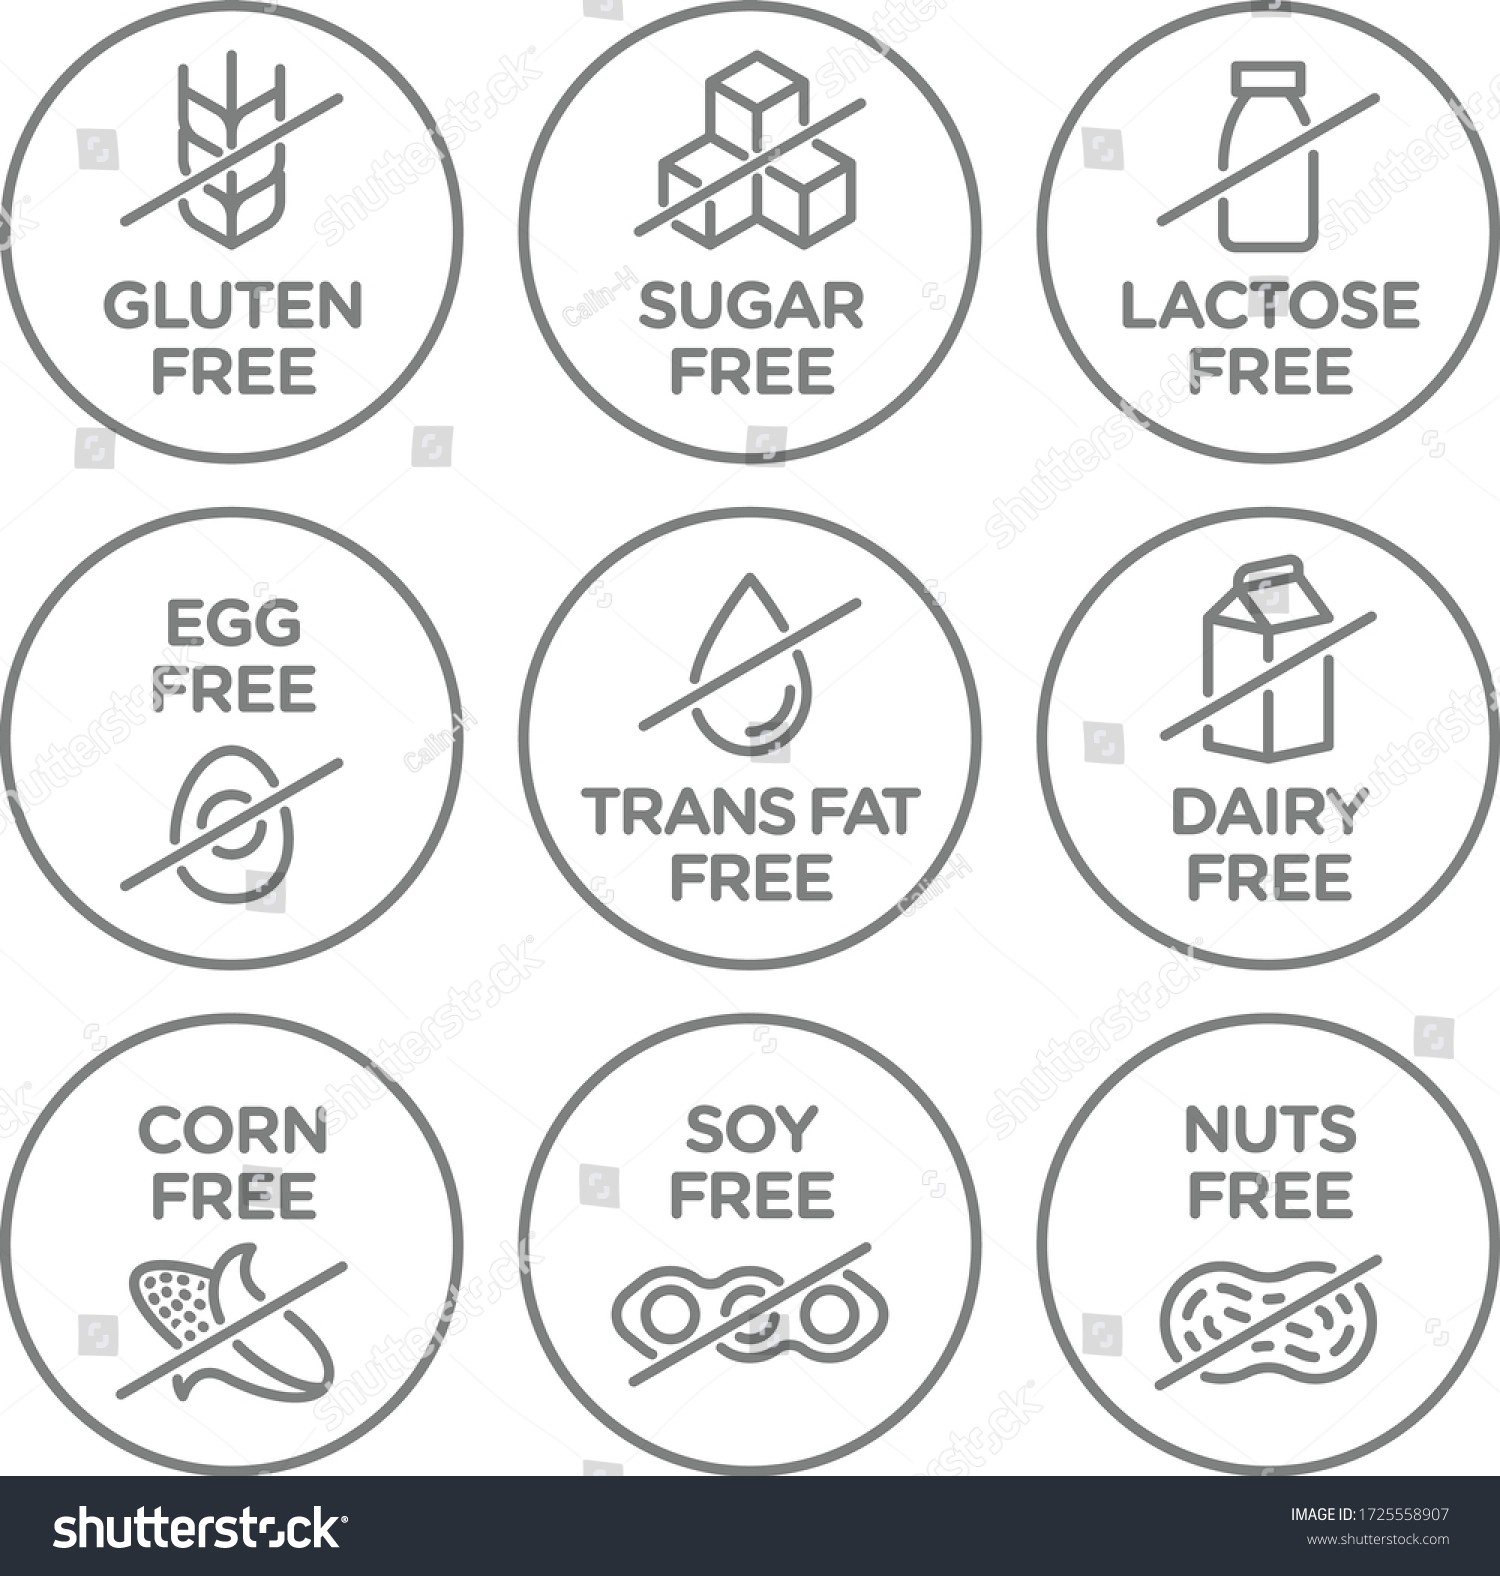 SVG of Allergen free icons set. Vector illustration.  svg